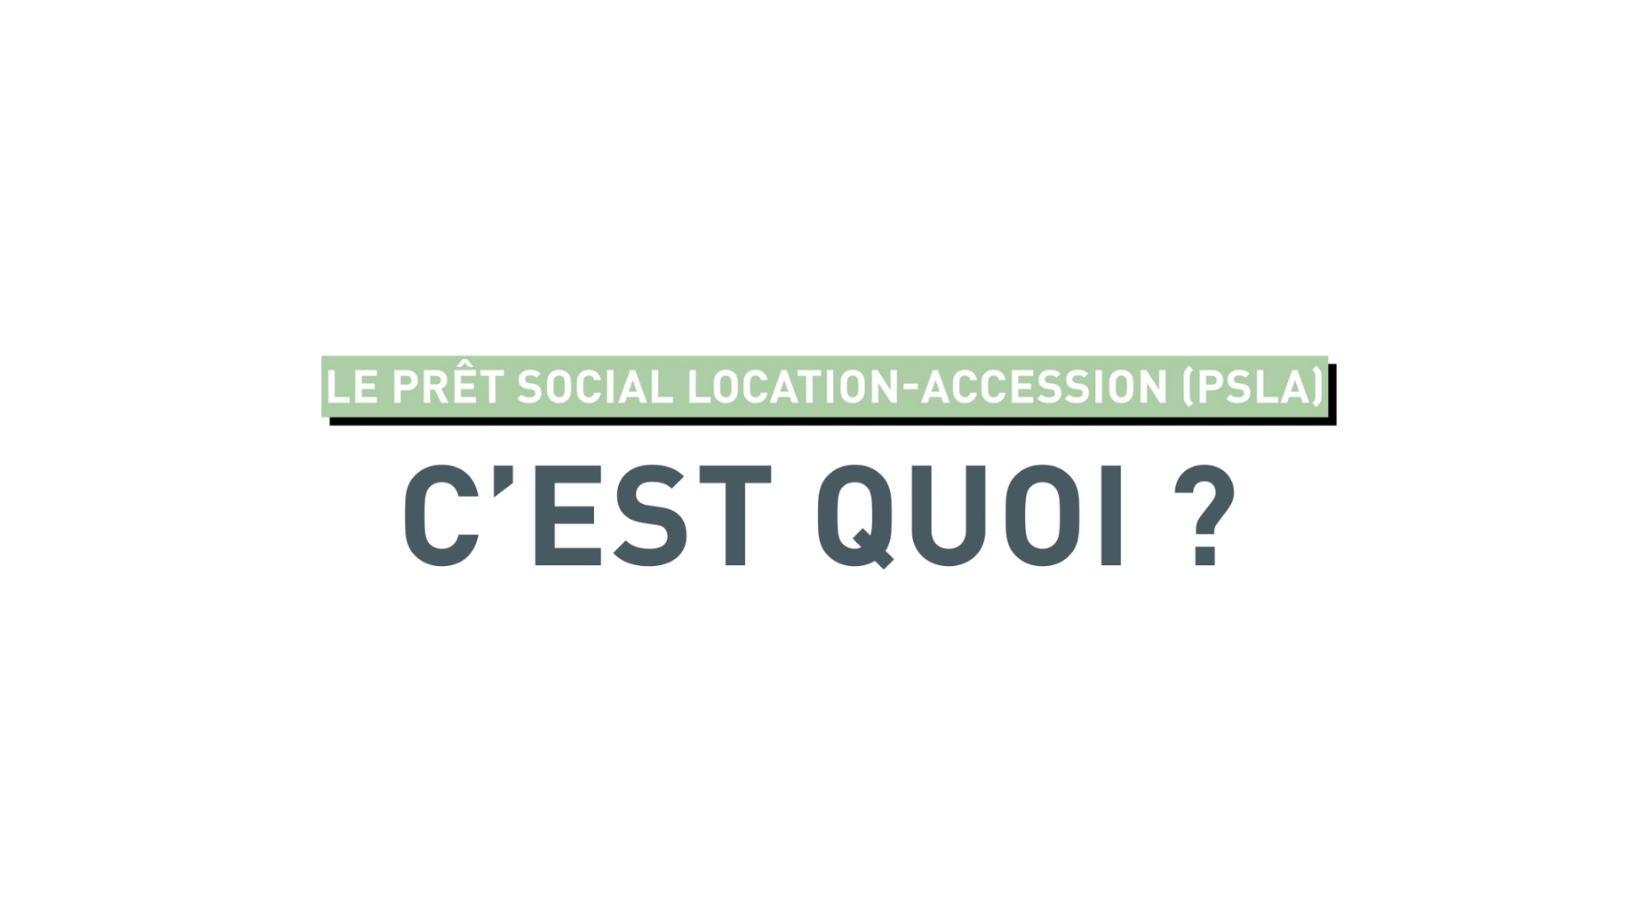 Le Prêt Social Location-Accession